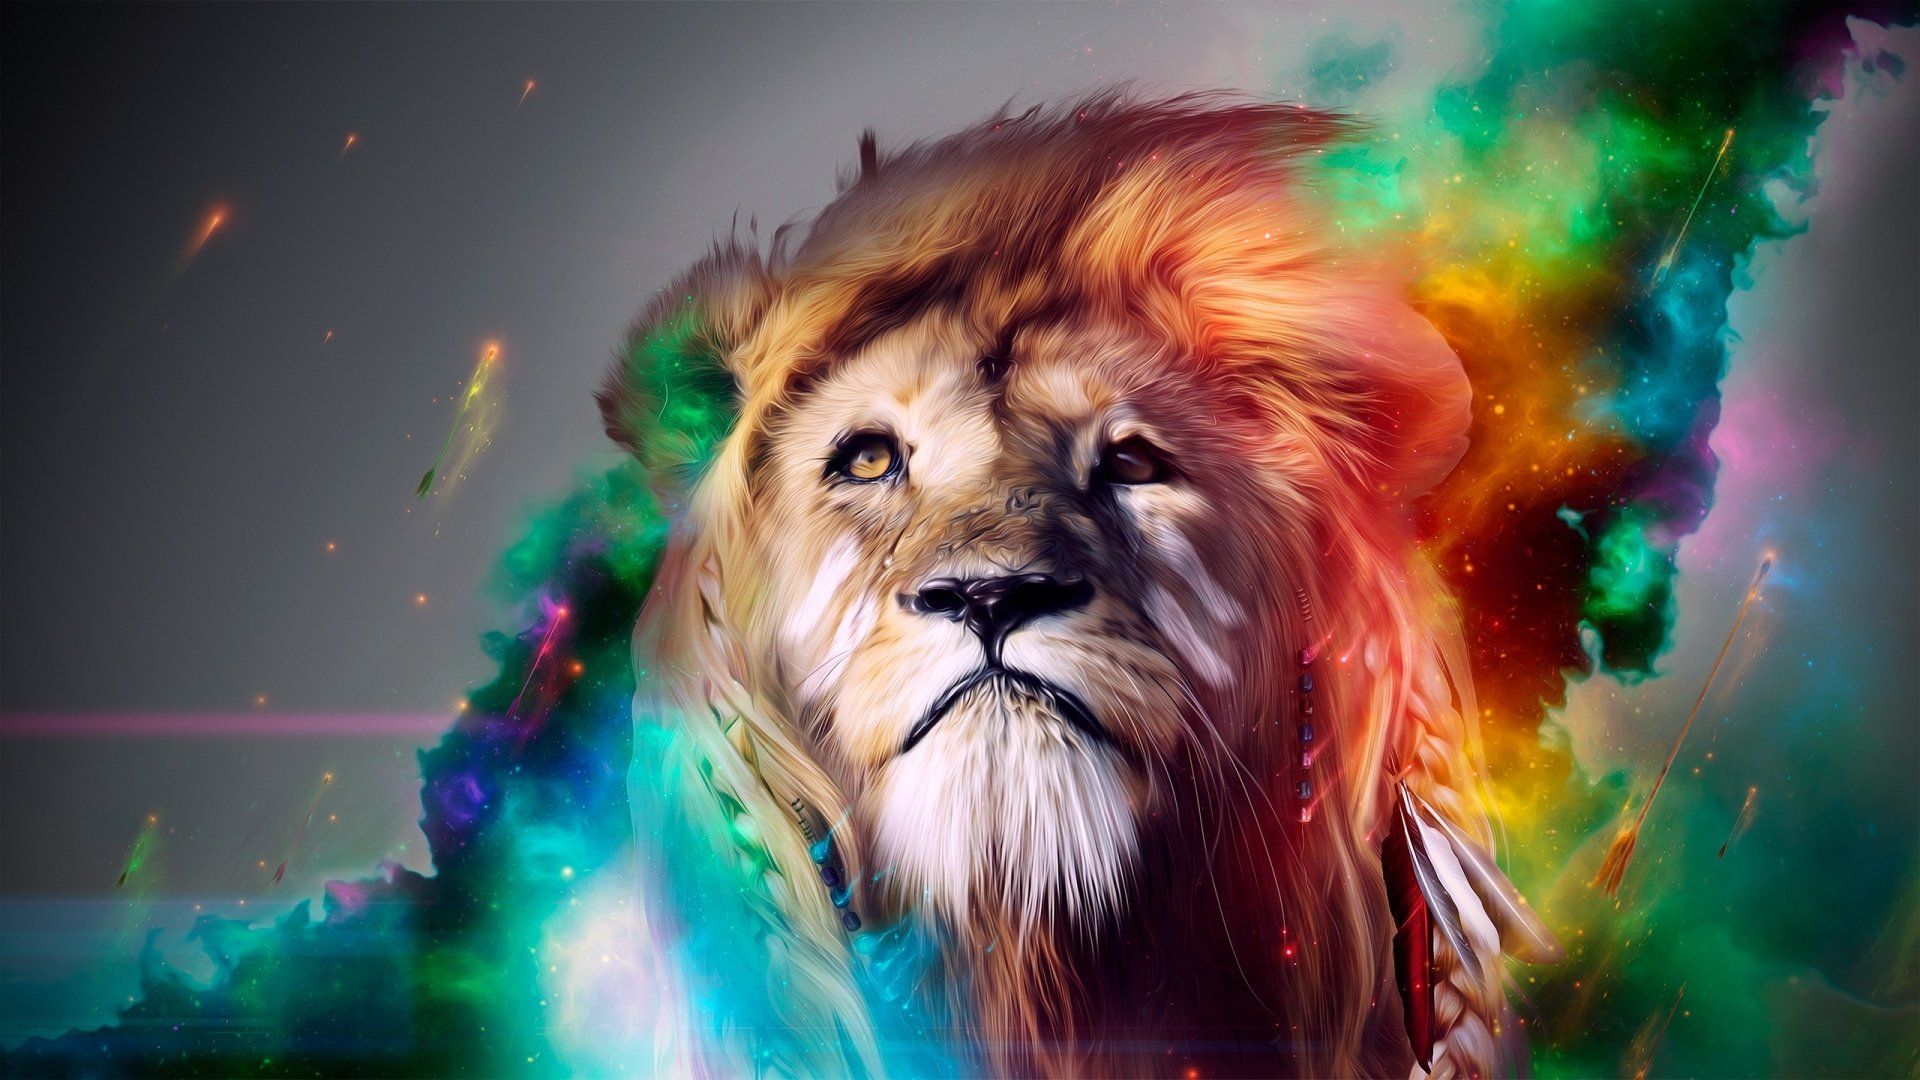 Abstract Lion Art Desktop Wallpapers